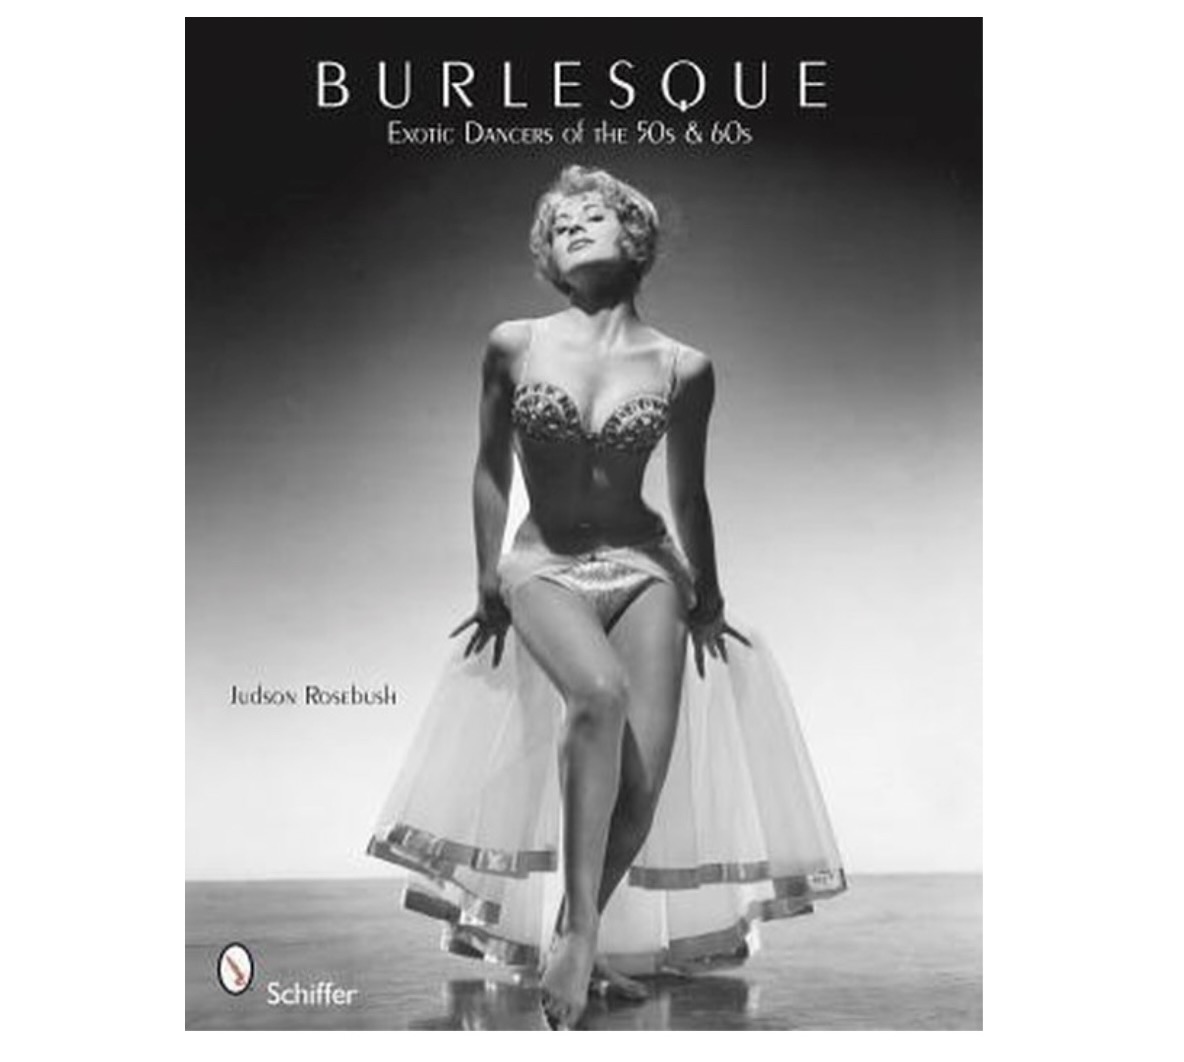 Je bekijkt nu Burlesque boeken die je gelezen moet hebben